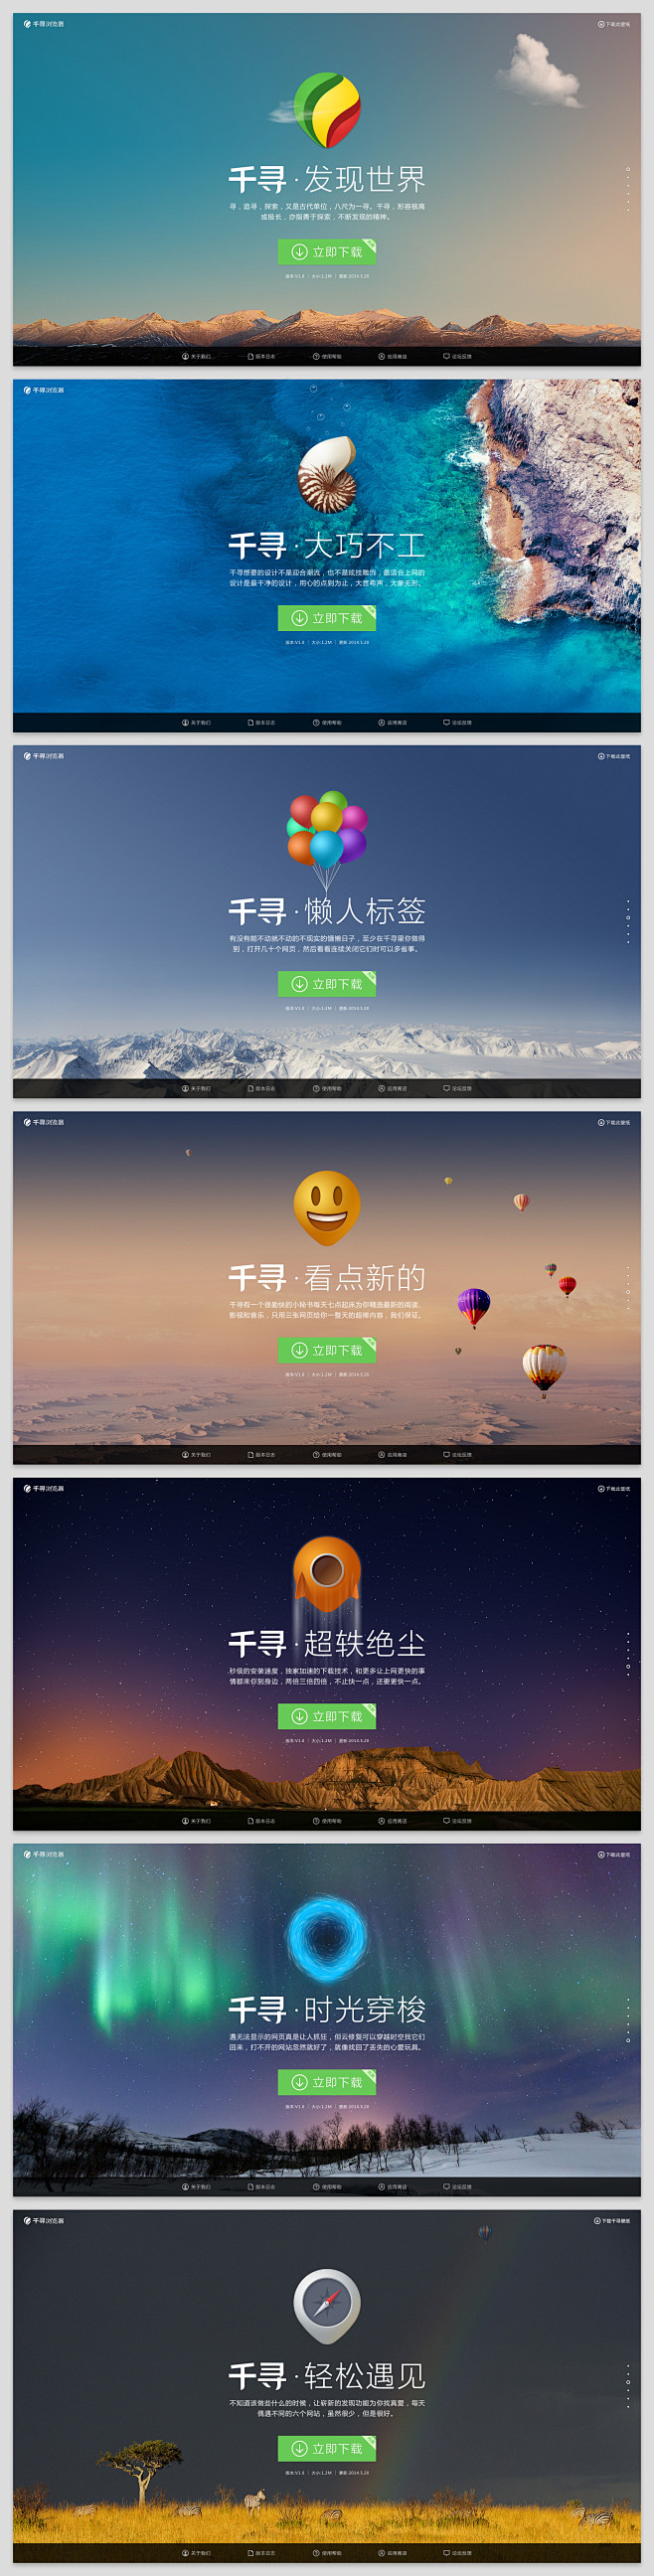 Qianxun website full